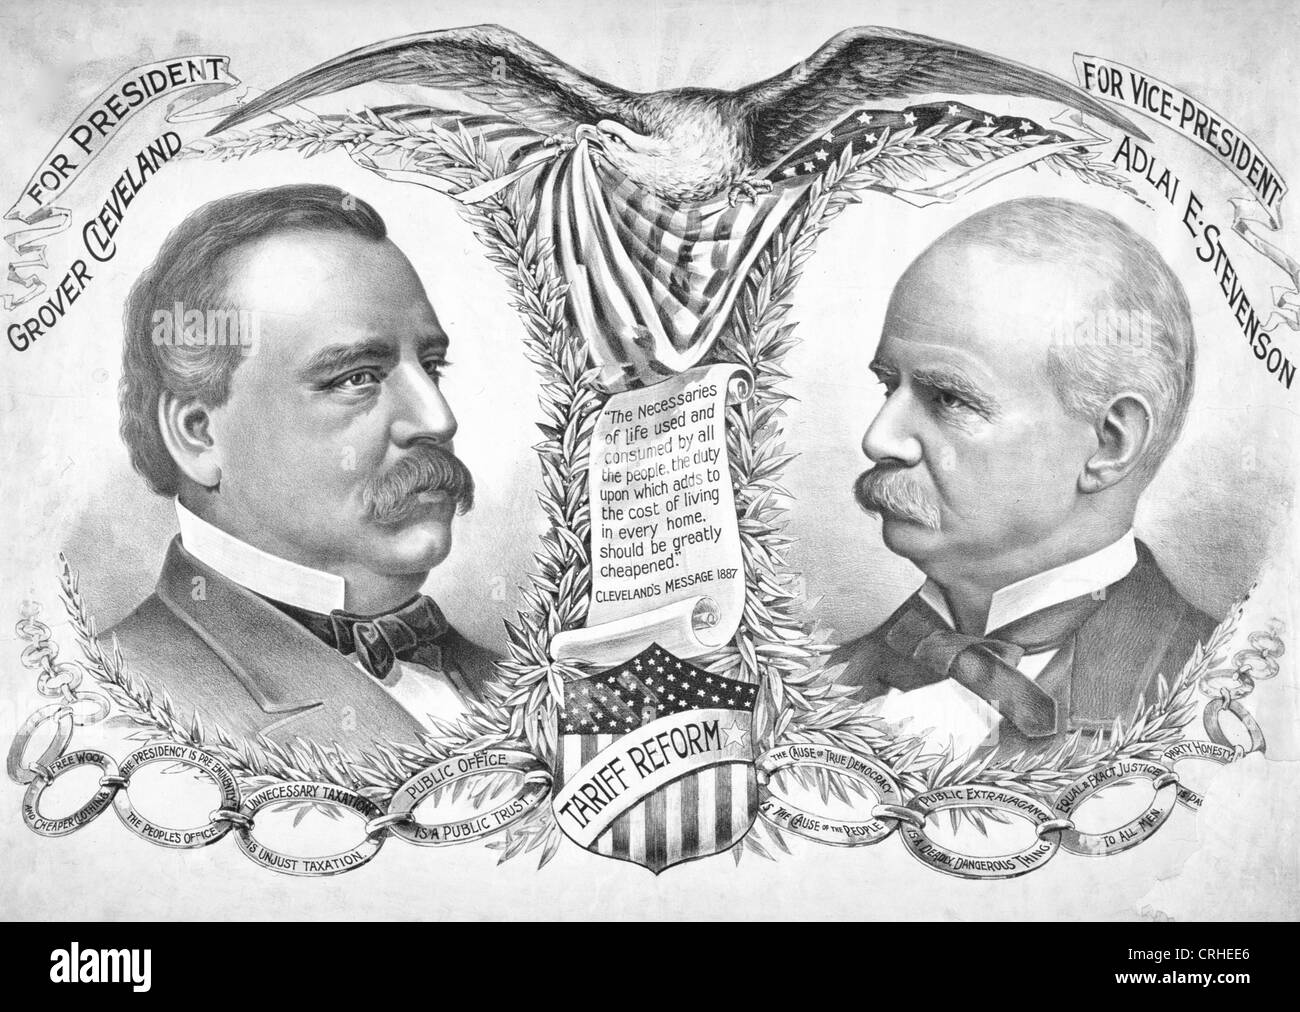 Pour le Président Grover Cleveland - Adlai Stevenson pour vice-président - annonce dans la campagne de l'élection présidentielle de 1892 aux Etats-Unis Banque D'Images